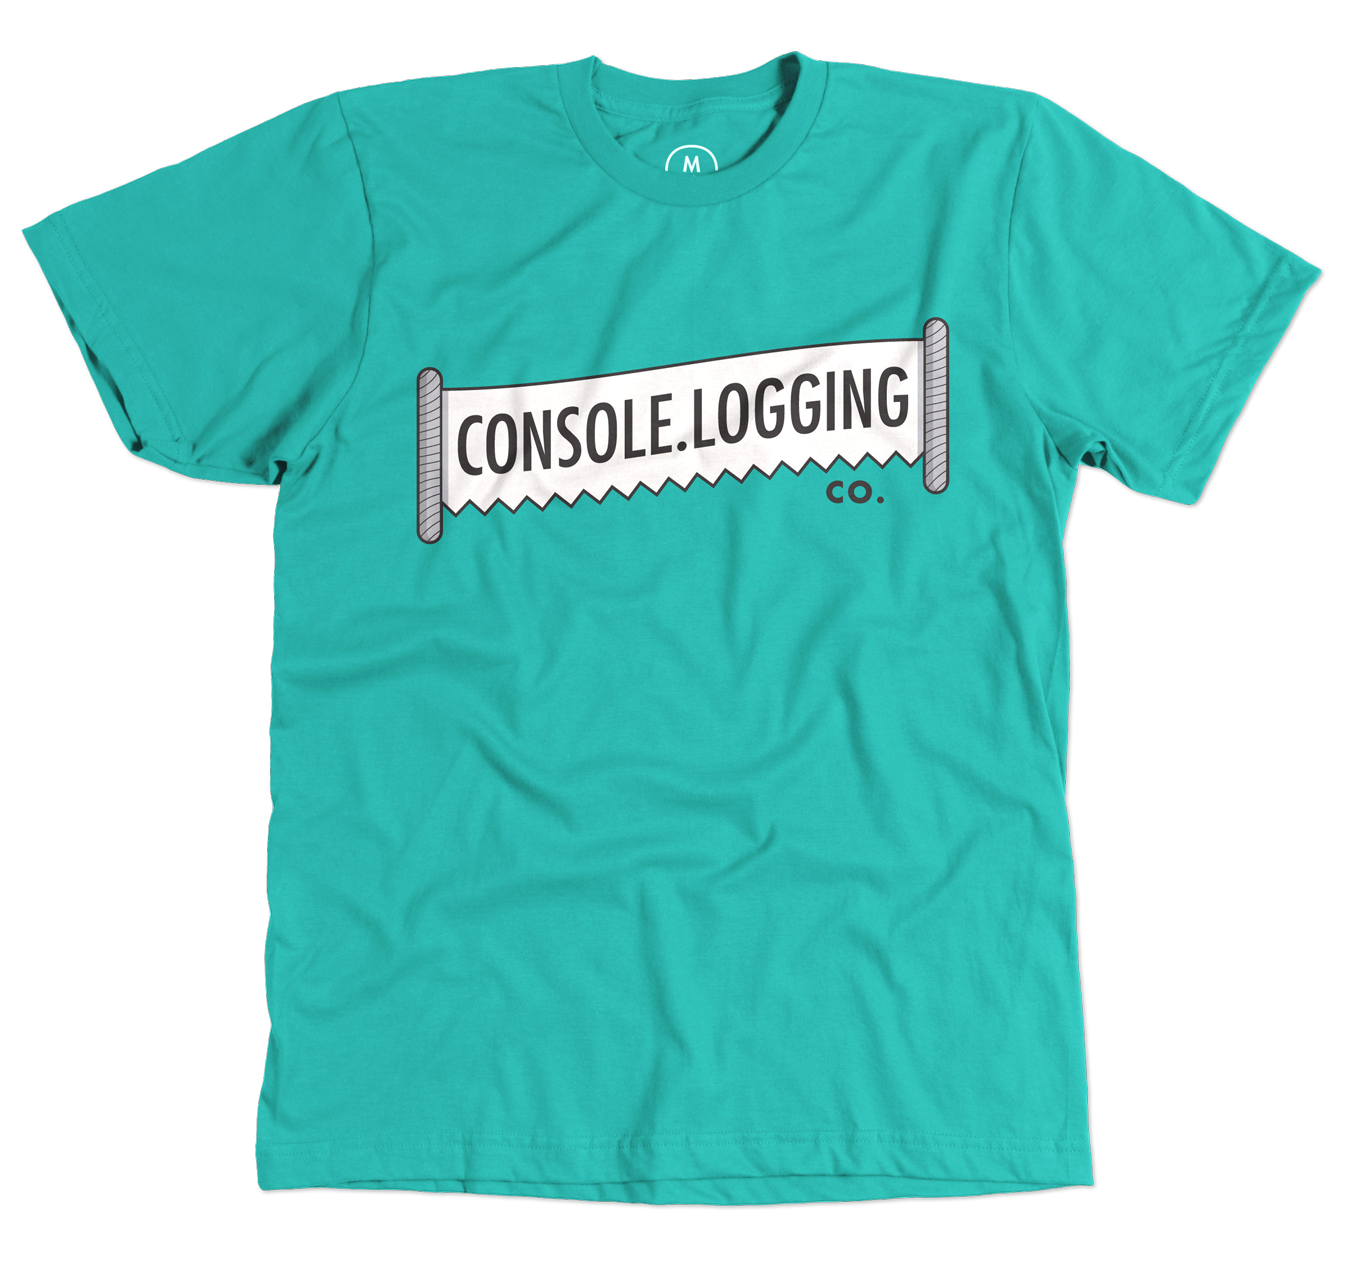 A Console.Logging Co. t-shirt is available through Cotton Bureau.